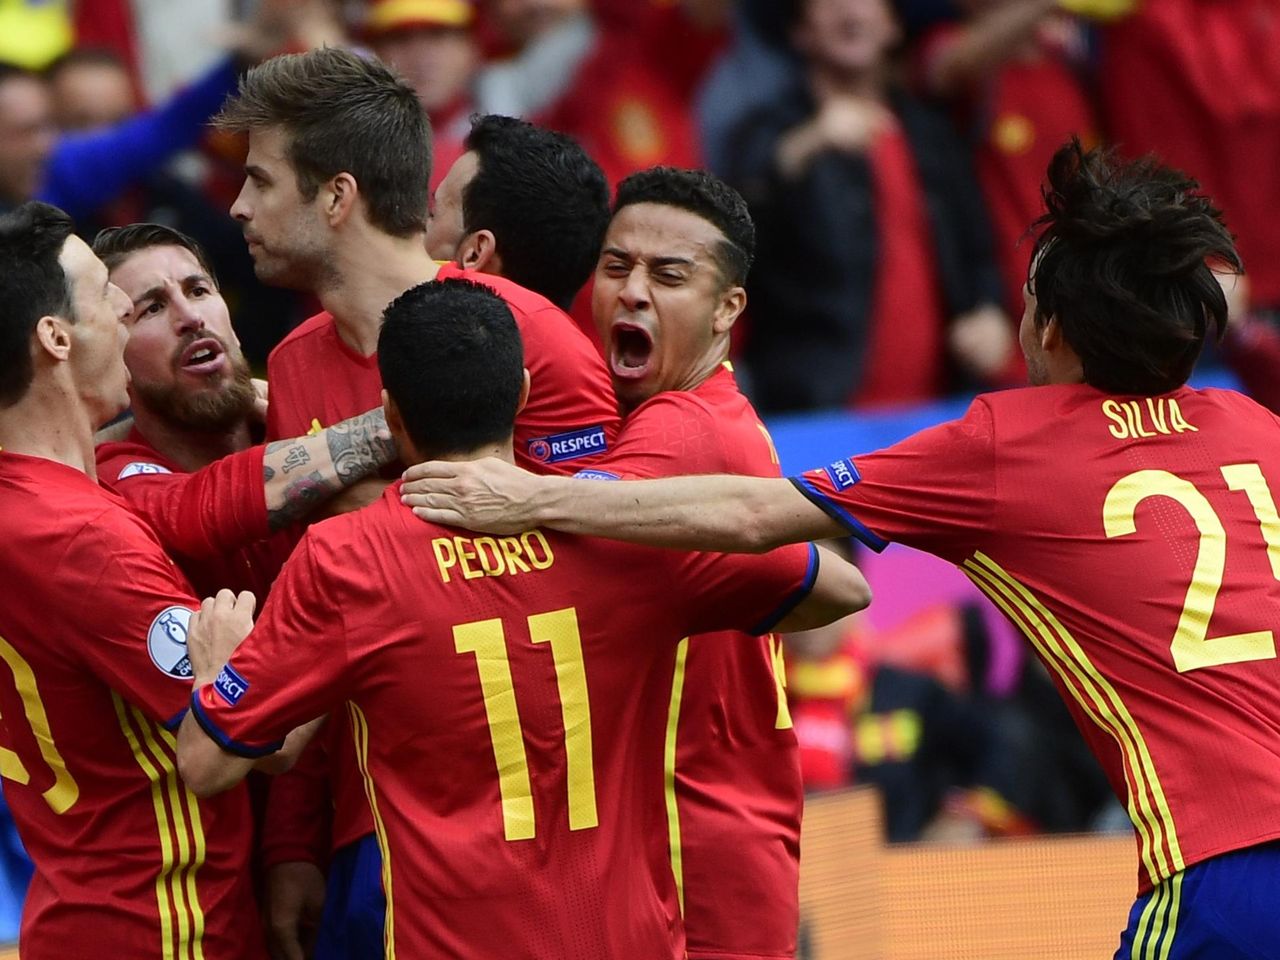 Eurocopa España vs Republica Checa: Resultado y resumen del partido - Eurosport